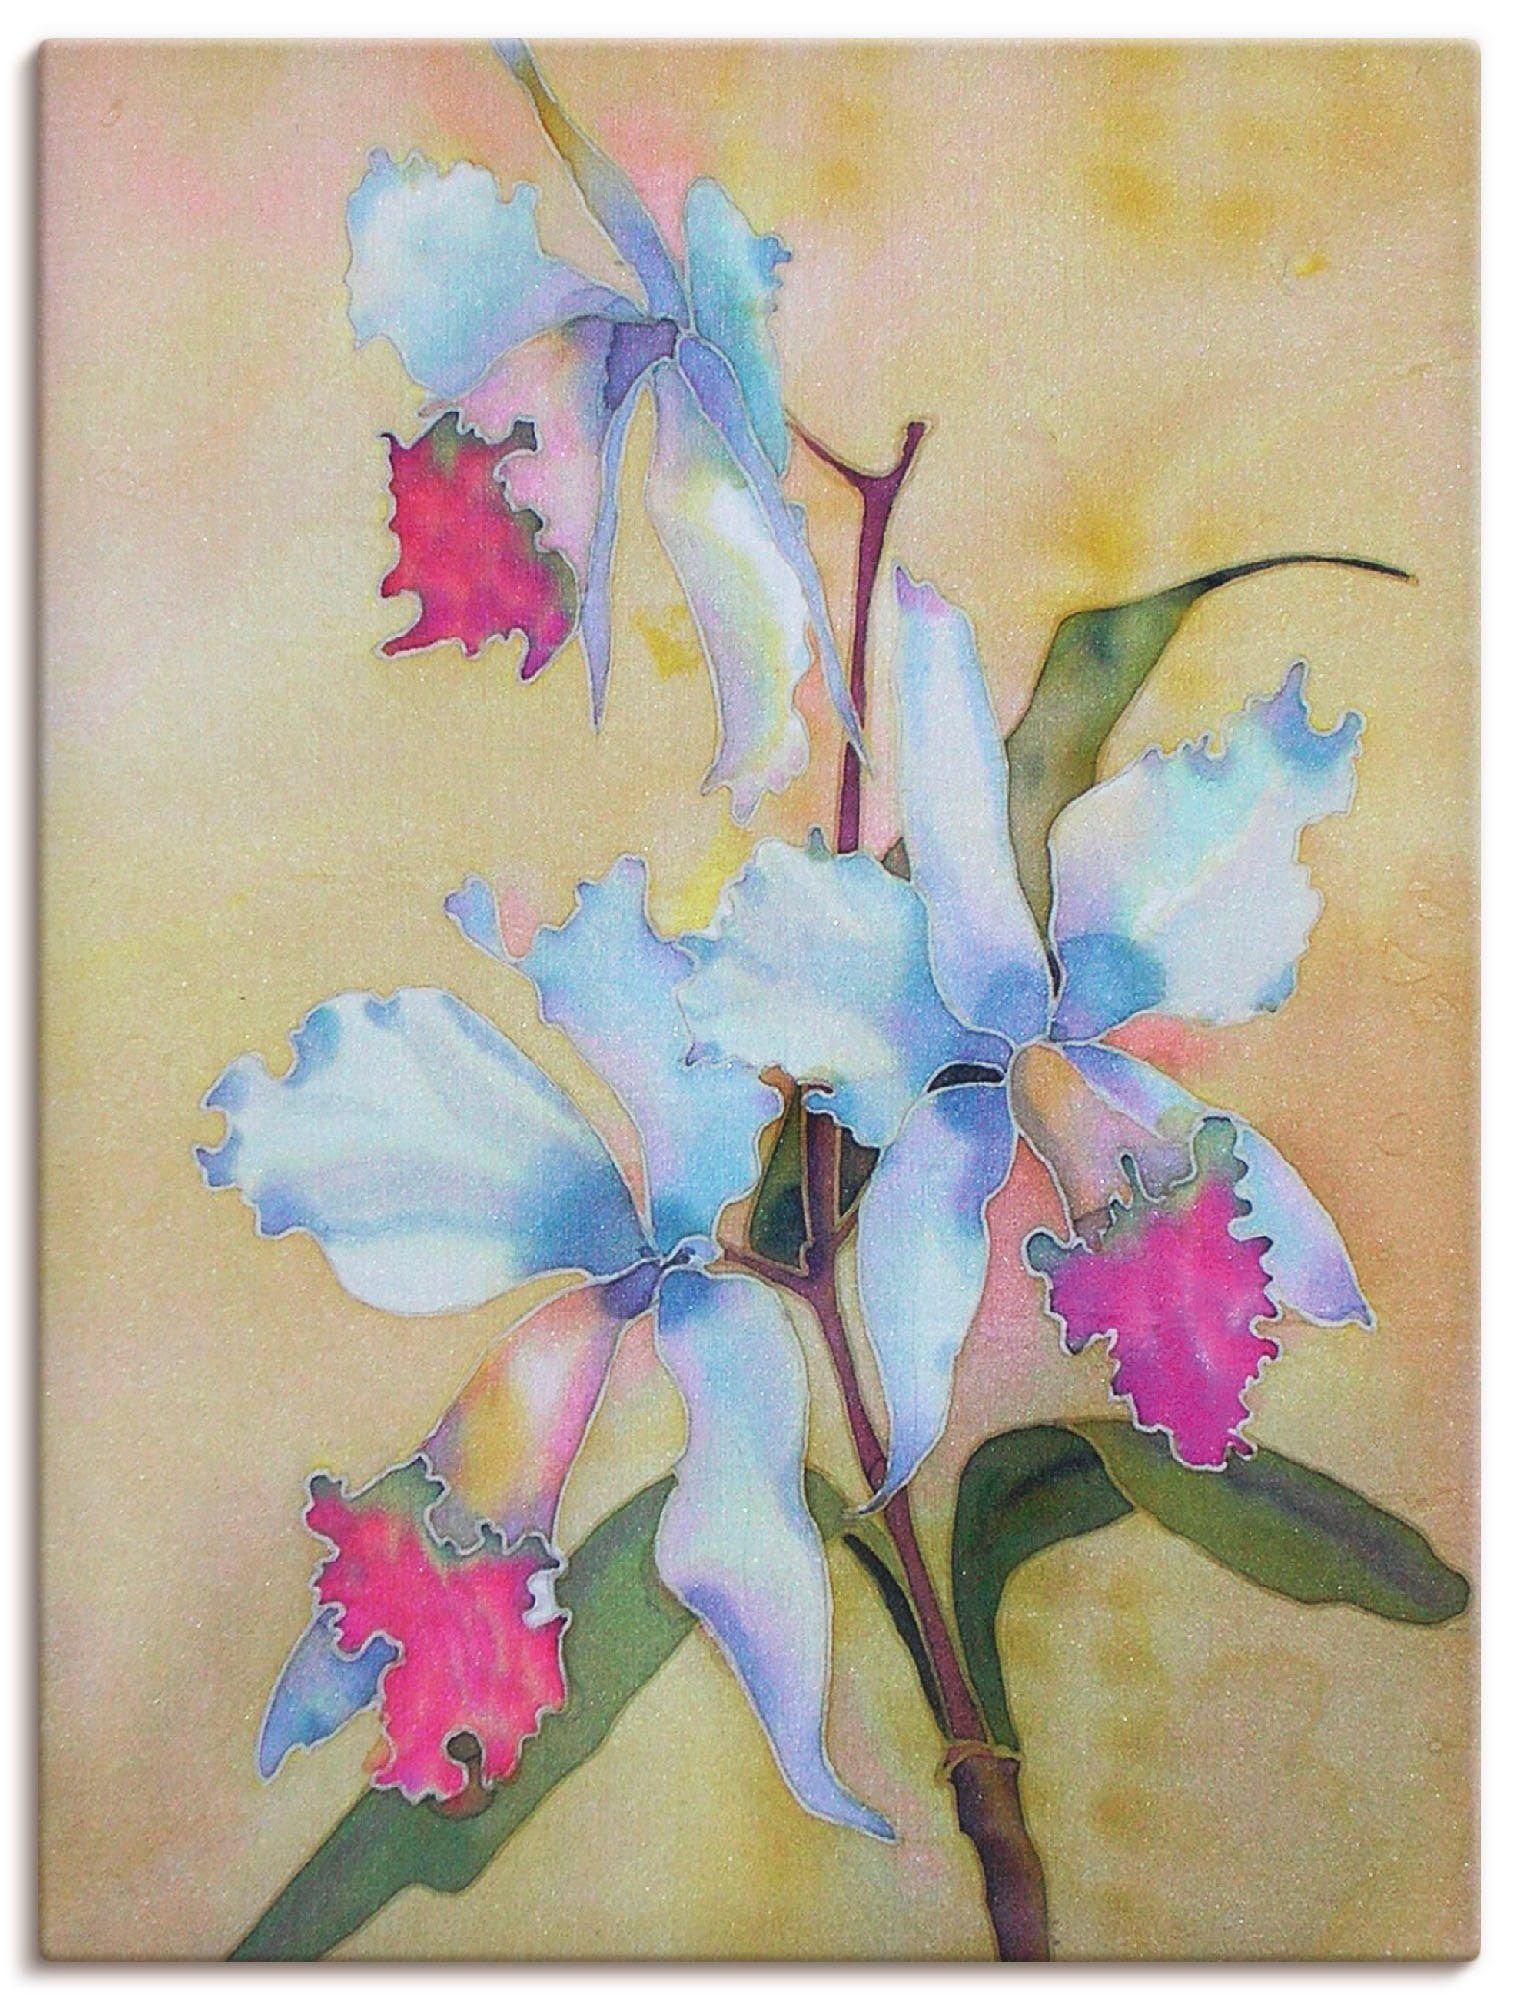 Artland Artprint Wit-blauwe orchidee in vele afmetingen & productsoorten -artprint op linnen, poster, muursticker / wandfolie ook geschikt voor de badkamer (1 stuk)